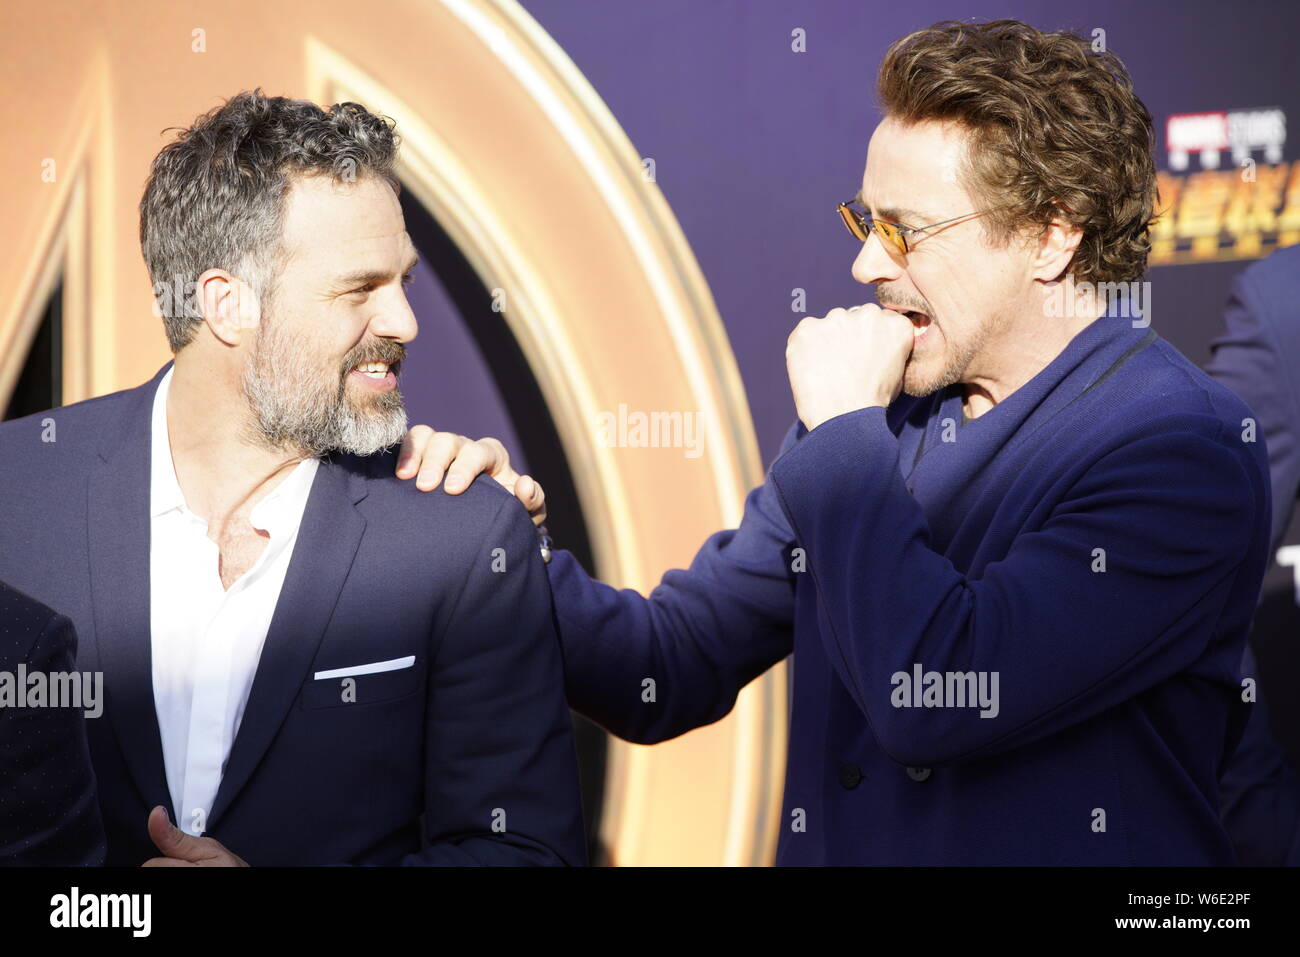 (Desde la izquierda), el actor y cantante estadounidense Robert Downey Jr. y el actor inglés Tom Hiddleston plantean como llegan a la alfombra roja de un evento promocional Foto de stock